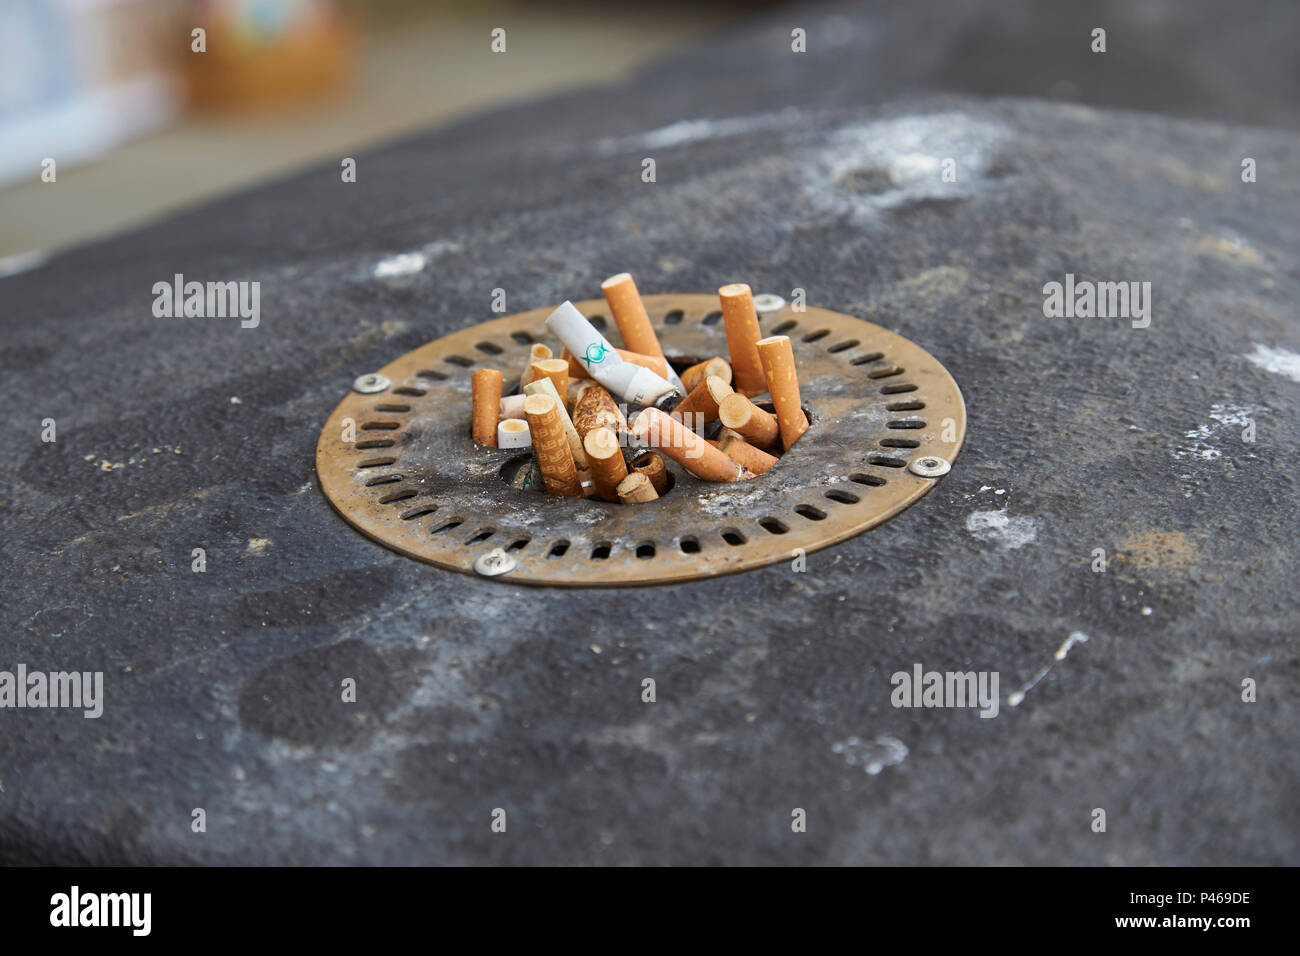 Cigarettes Banque d'image et photos - Page 7 - Alamy